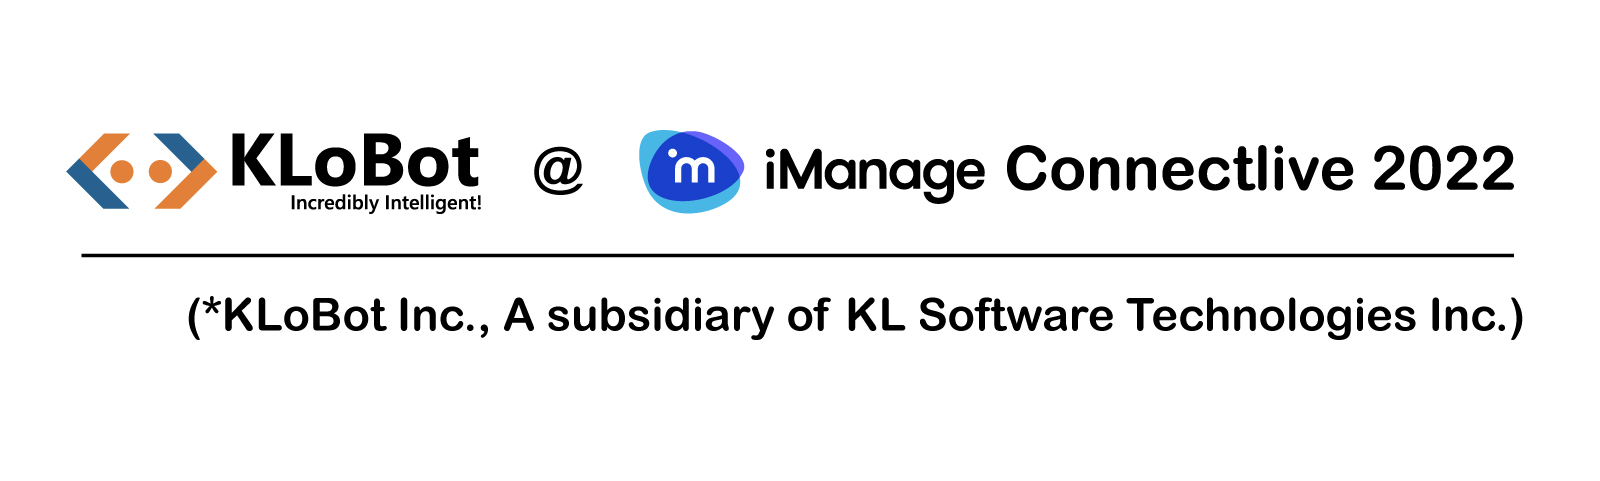 KLST ar iManage ConnectLive 2022